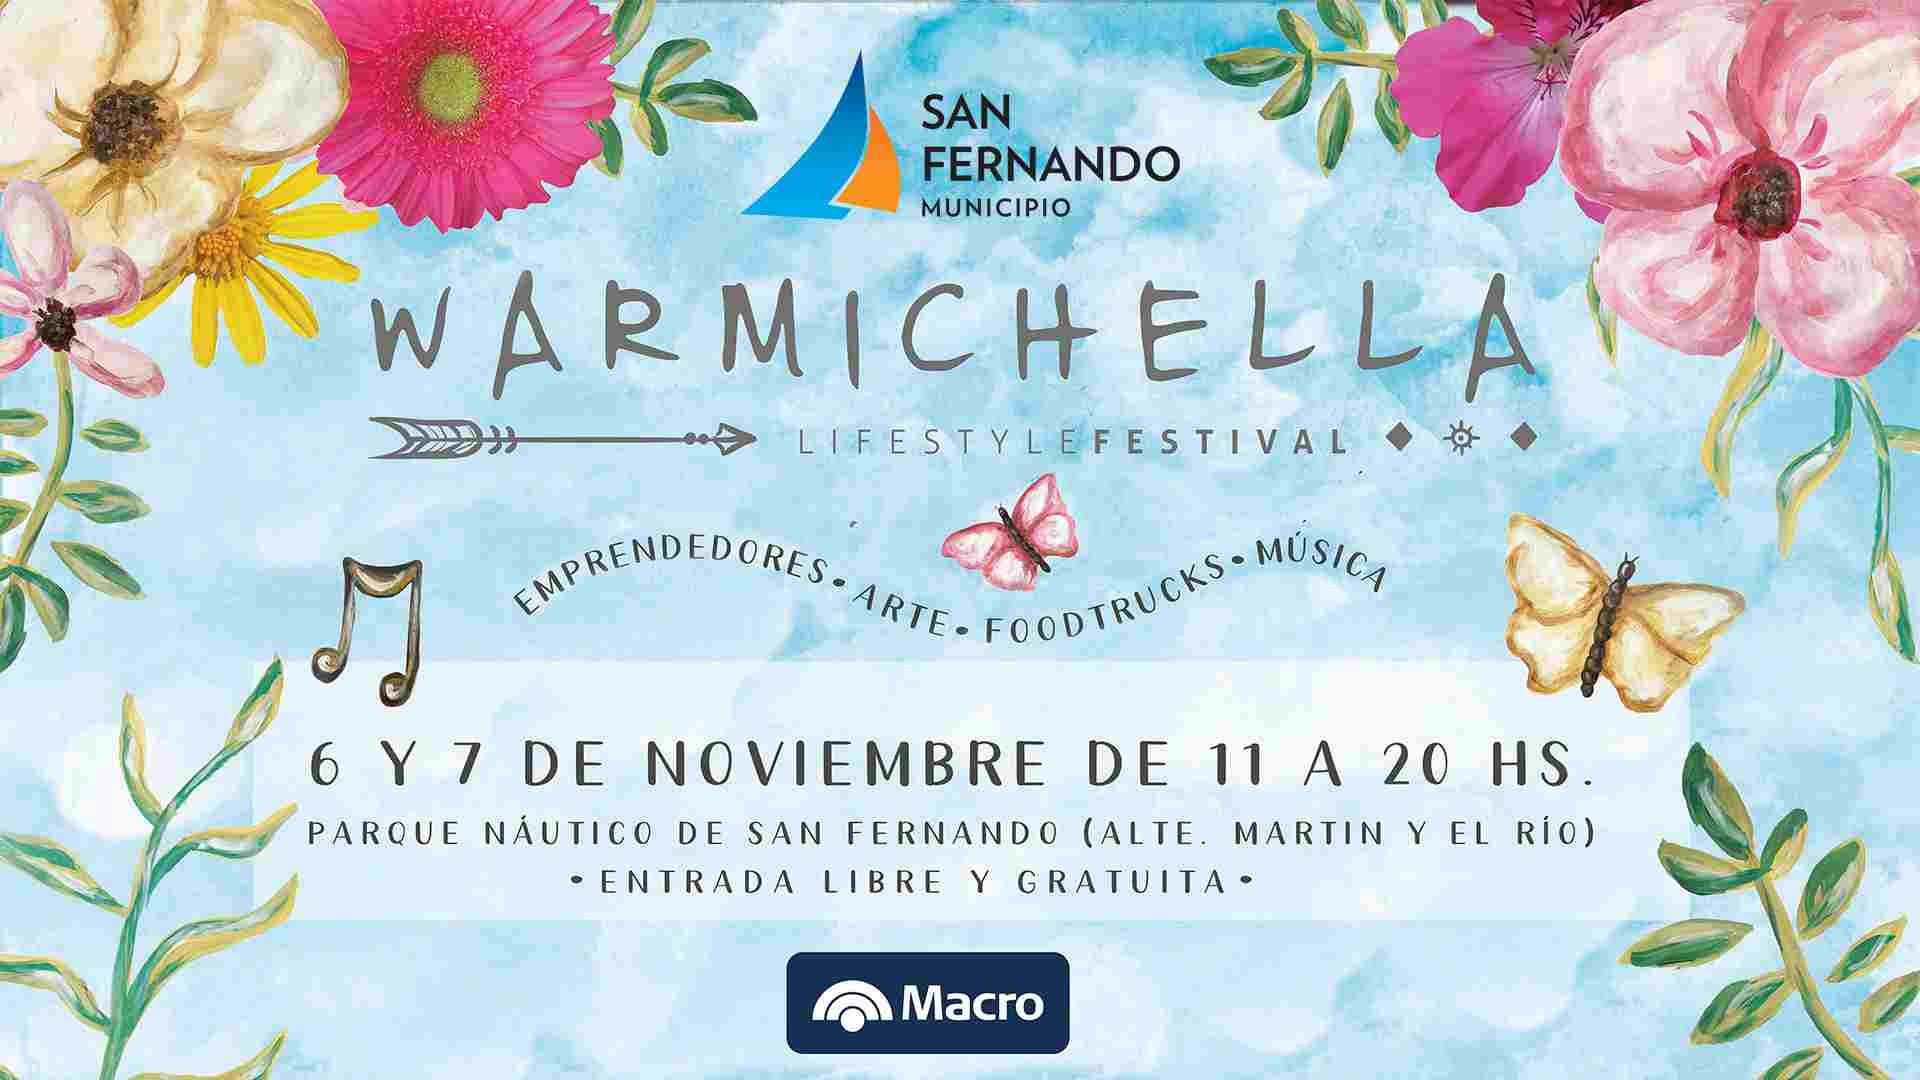 Regresa a San Fernando el Warmichella Lifestyle Festival